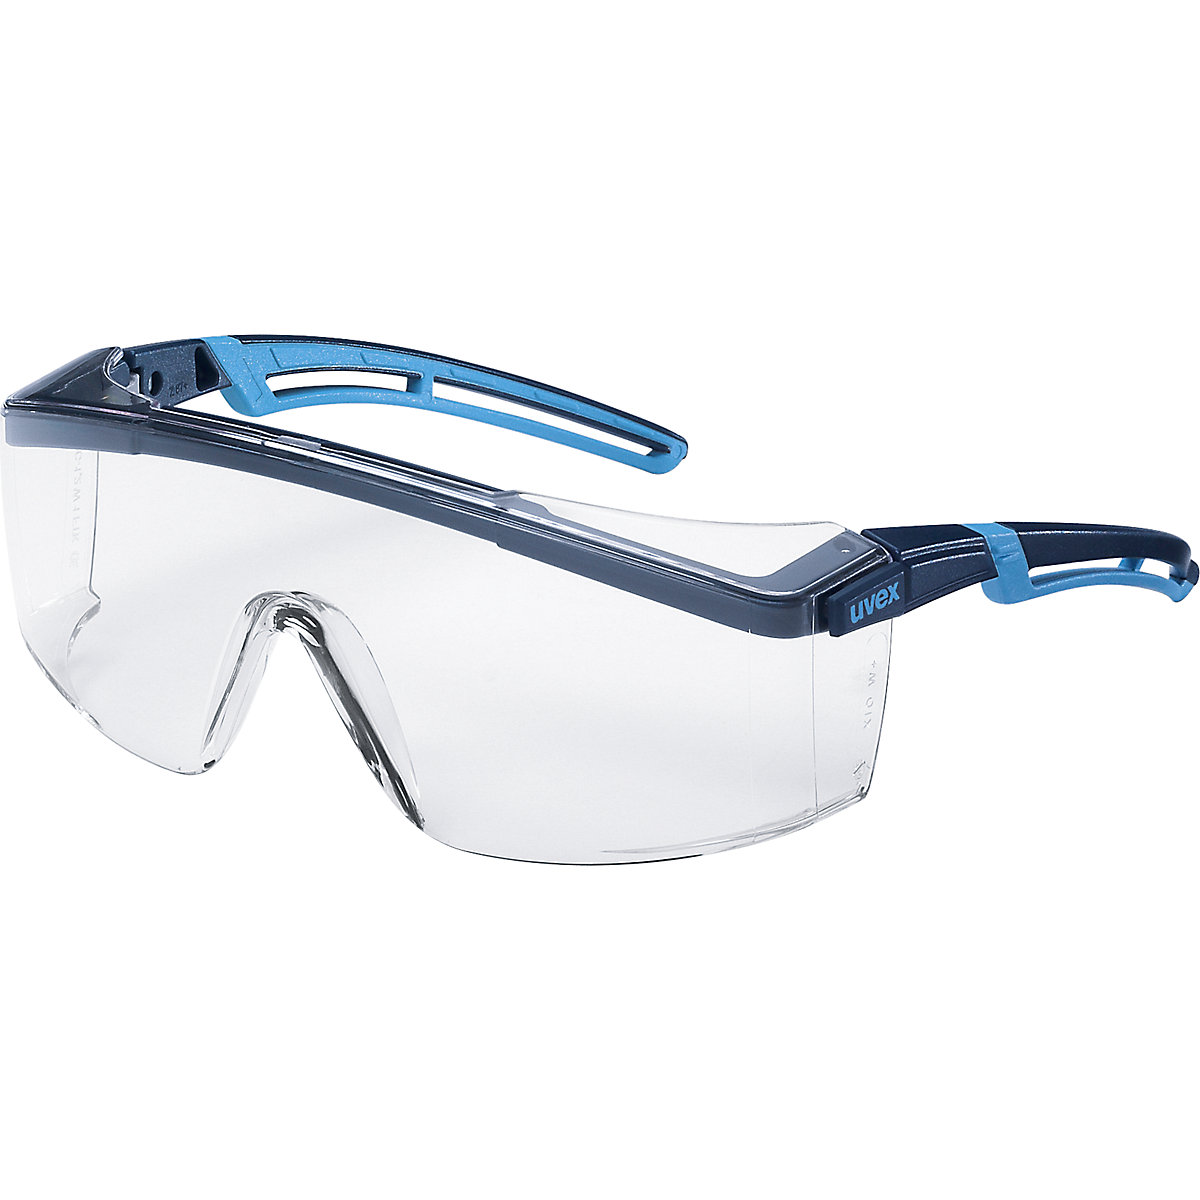 Zaščitna očala atrospec 2.0 – Uvex